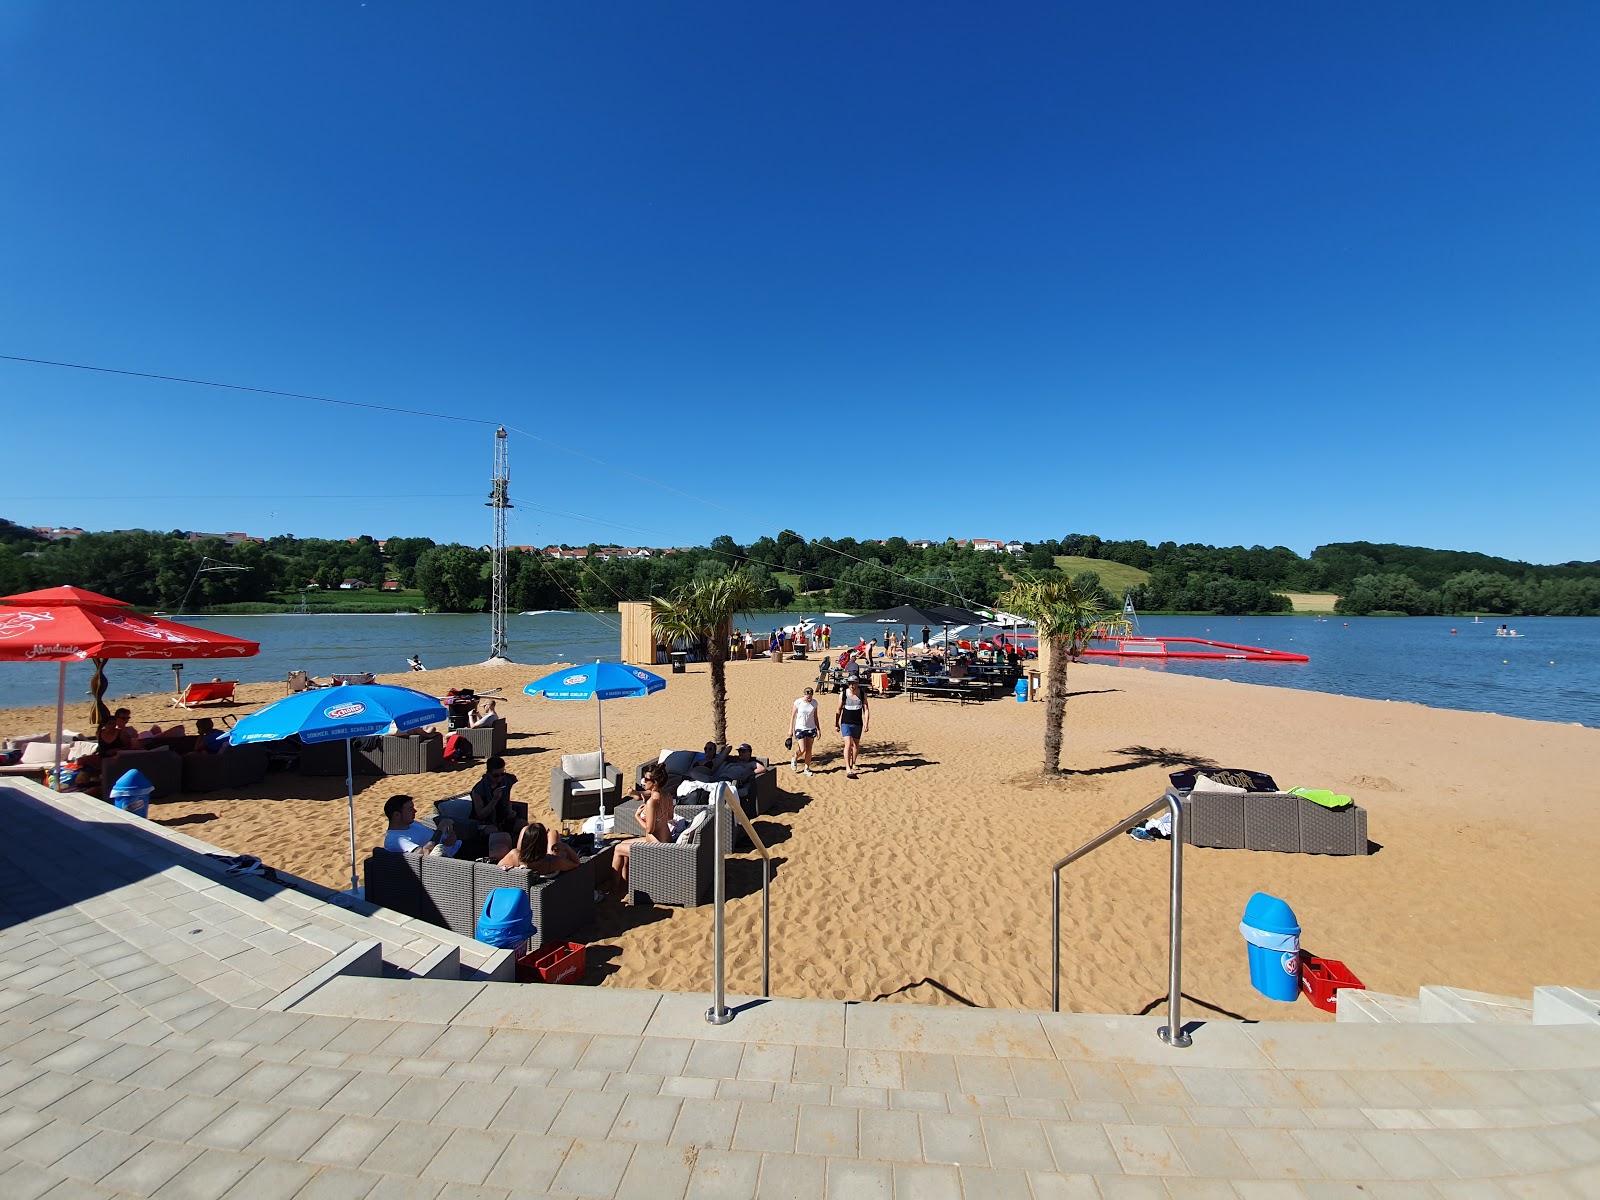 Zdjęcie Spielplatz Wakepark Brombachsee z przestronna plaża